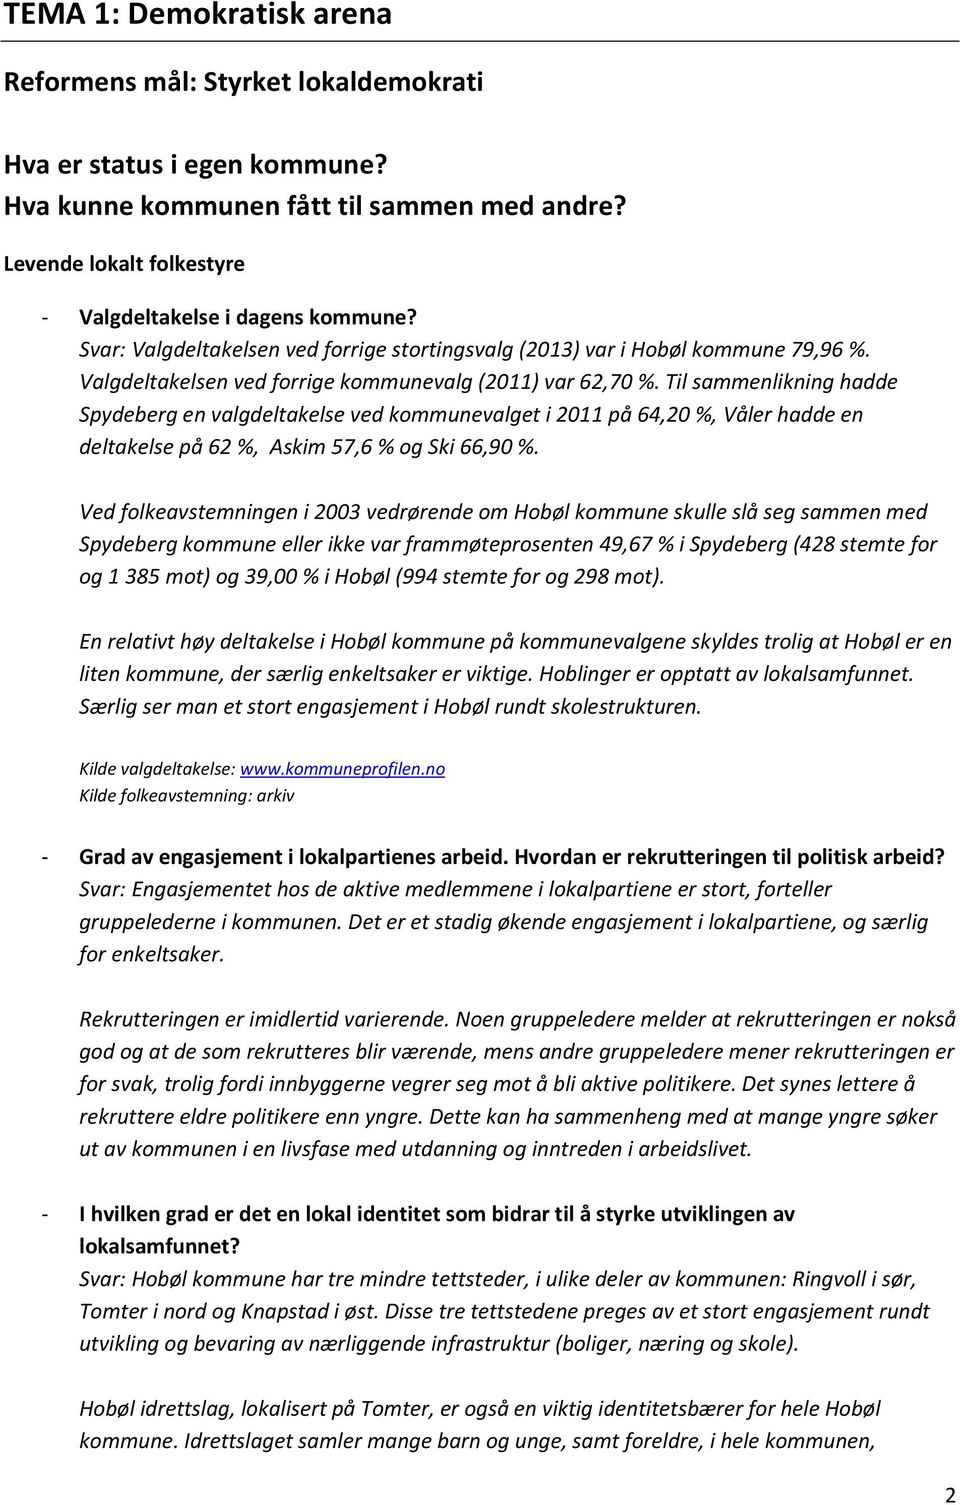 Til sammenlikning hadde Spydeberg en valgdeltakelse ved kommunevalget i 2011 på 64,20 %, Våler hadde en deltakelse på 62 %, Askim 57,6 % og Ski 66,90 %.